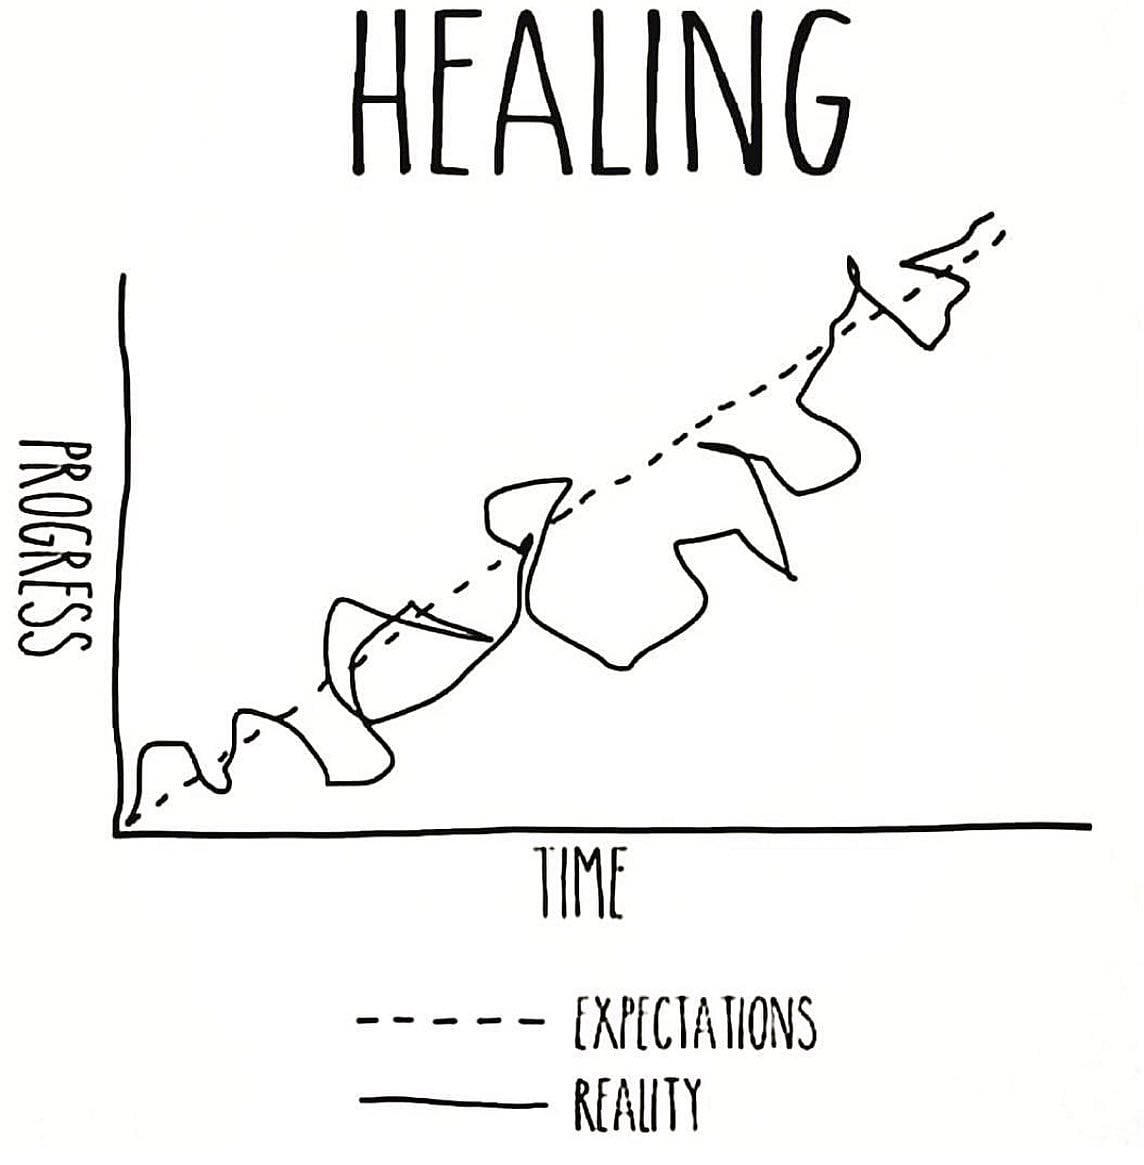 healing journey